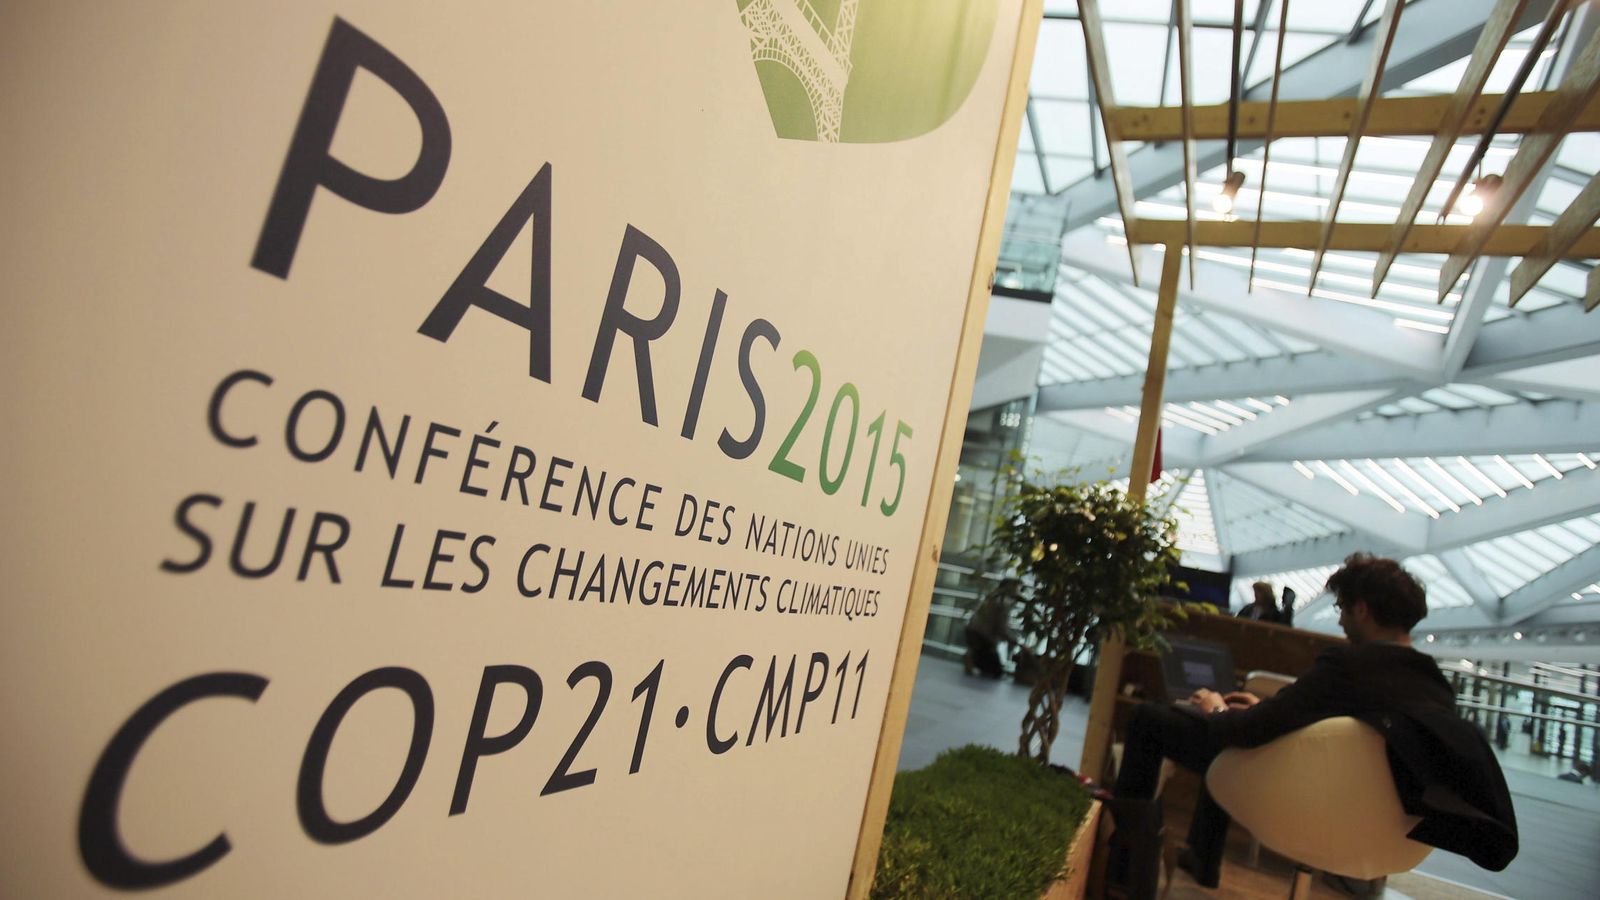 Foto: Anuncio de la próxima conferencia sobre el cambio climático París2015 en el World Conference Center de Bonn, Alemania, el pasado mes de octubre. (EFE)